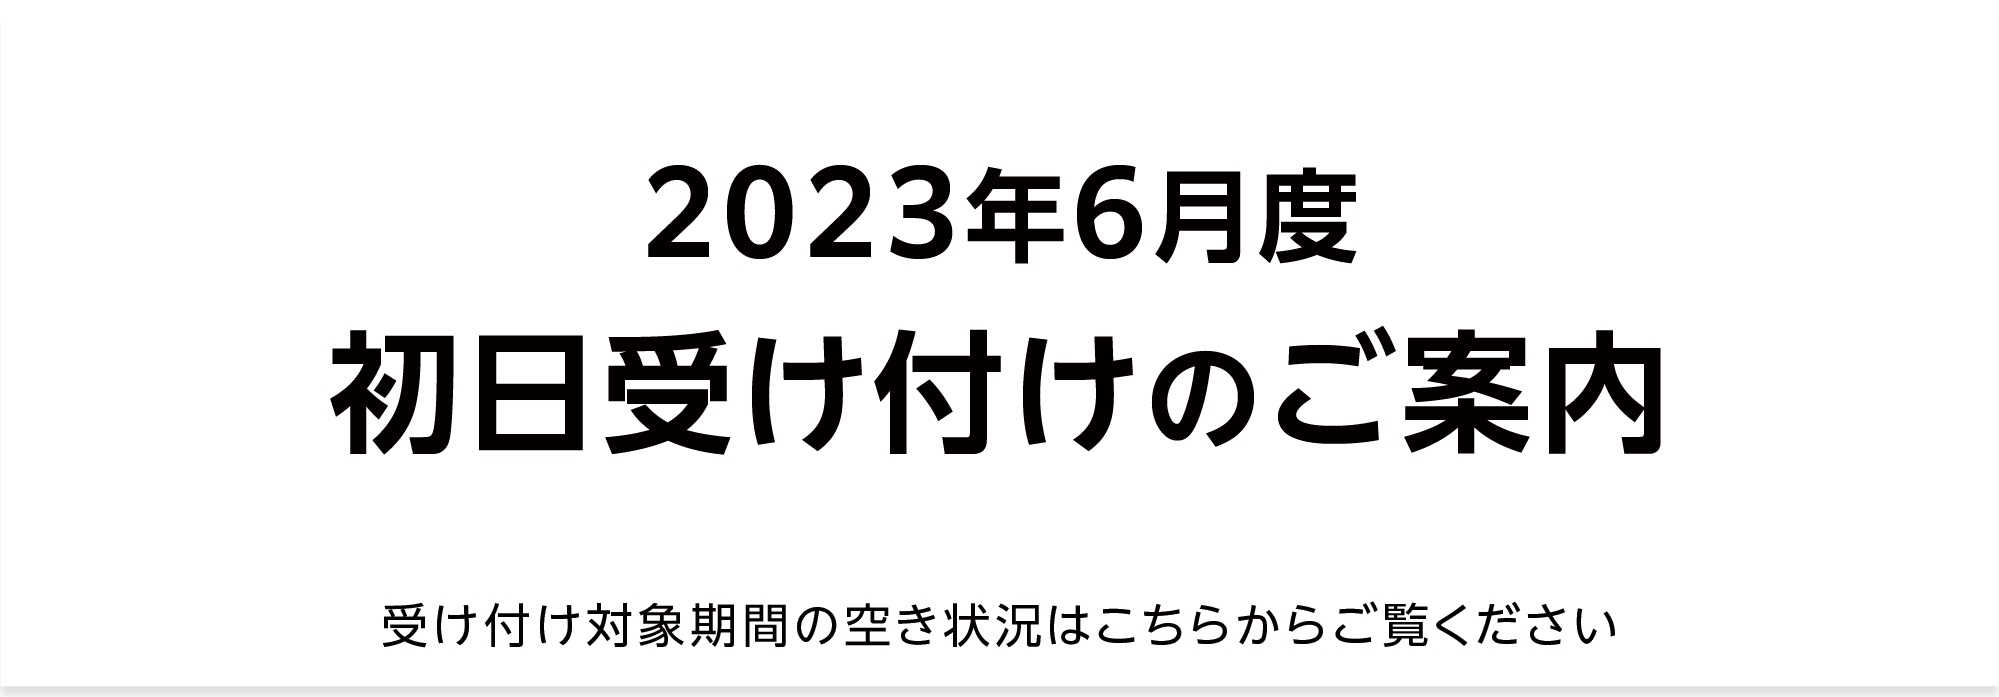 【重要】2023年6月 初日受け付け（空き状況掲載）